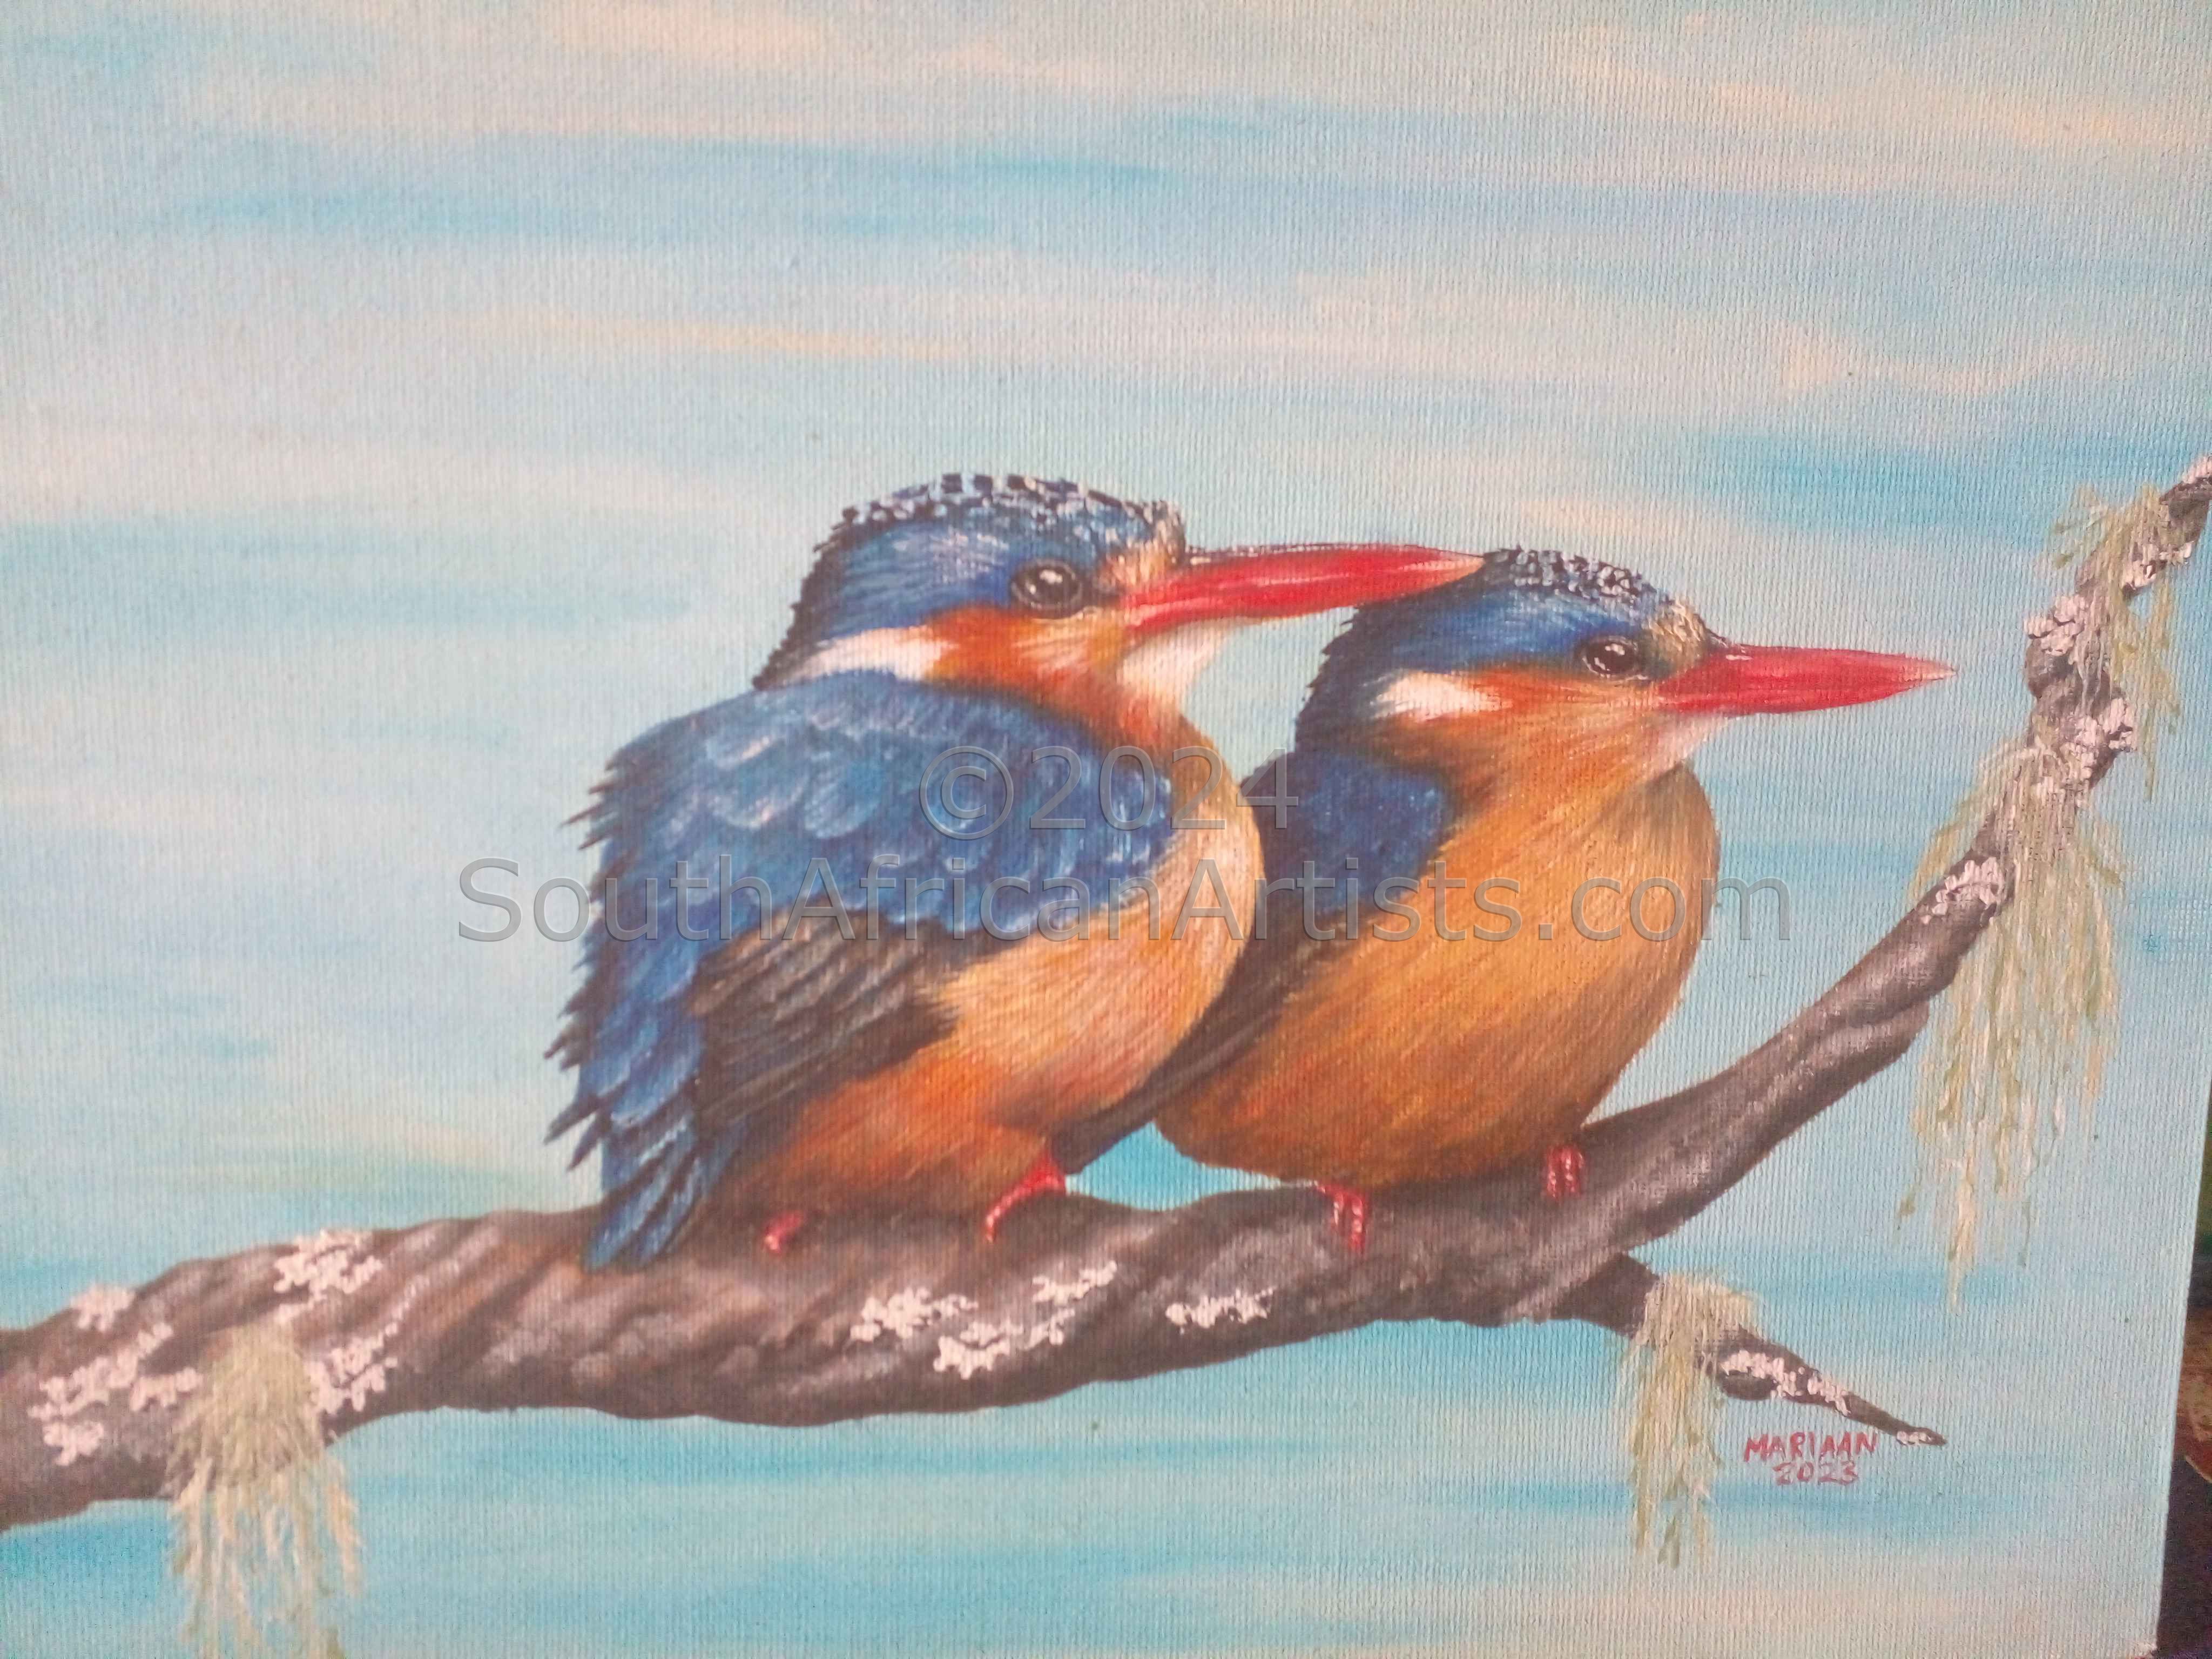 Kingfishers